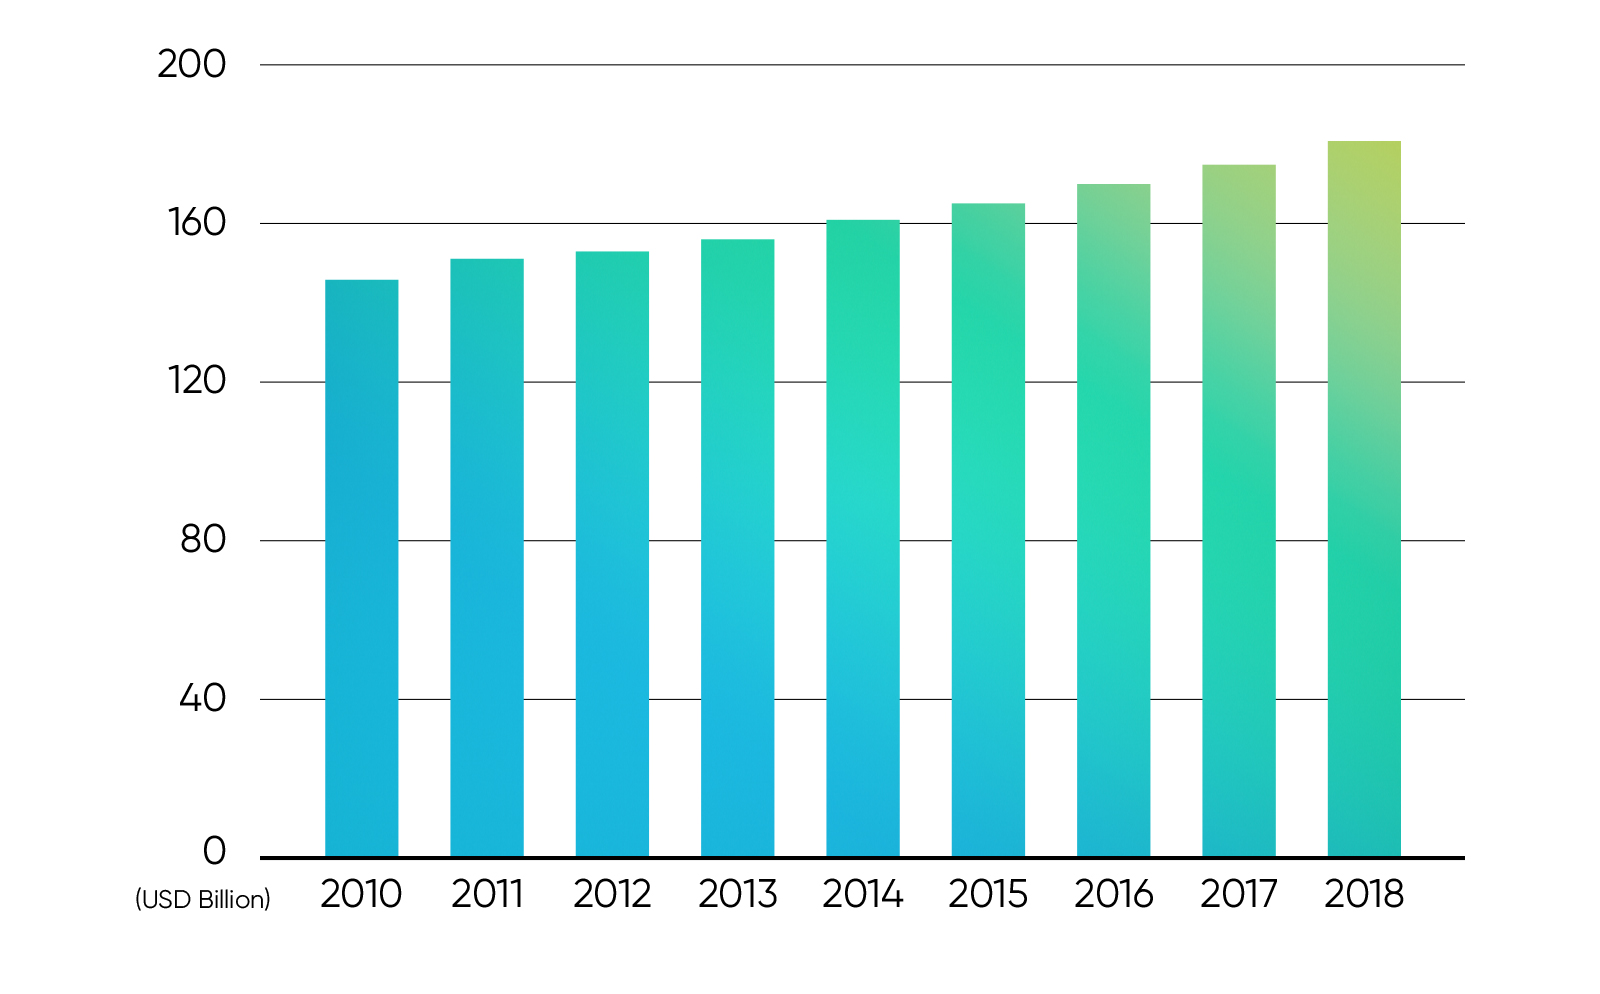 产品或企业卡通IP形象 2019 - 2020 设计趋势总结